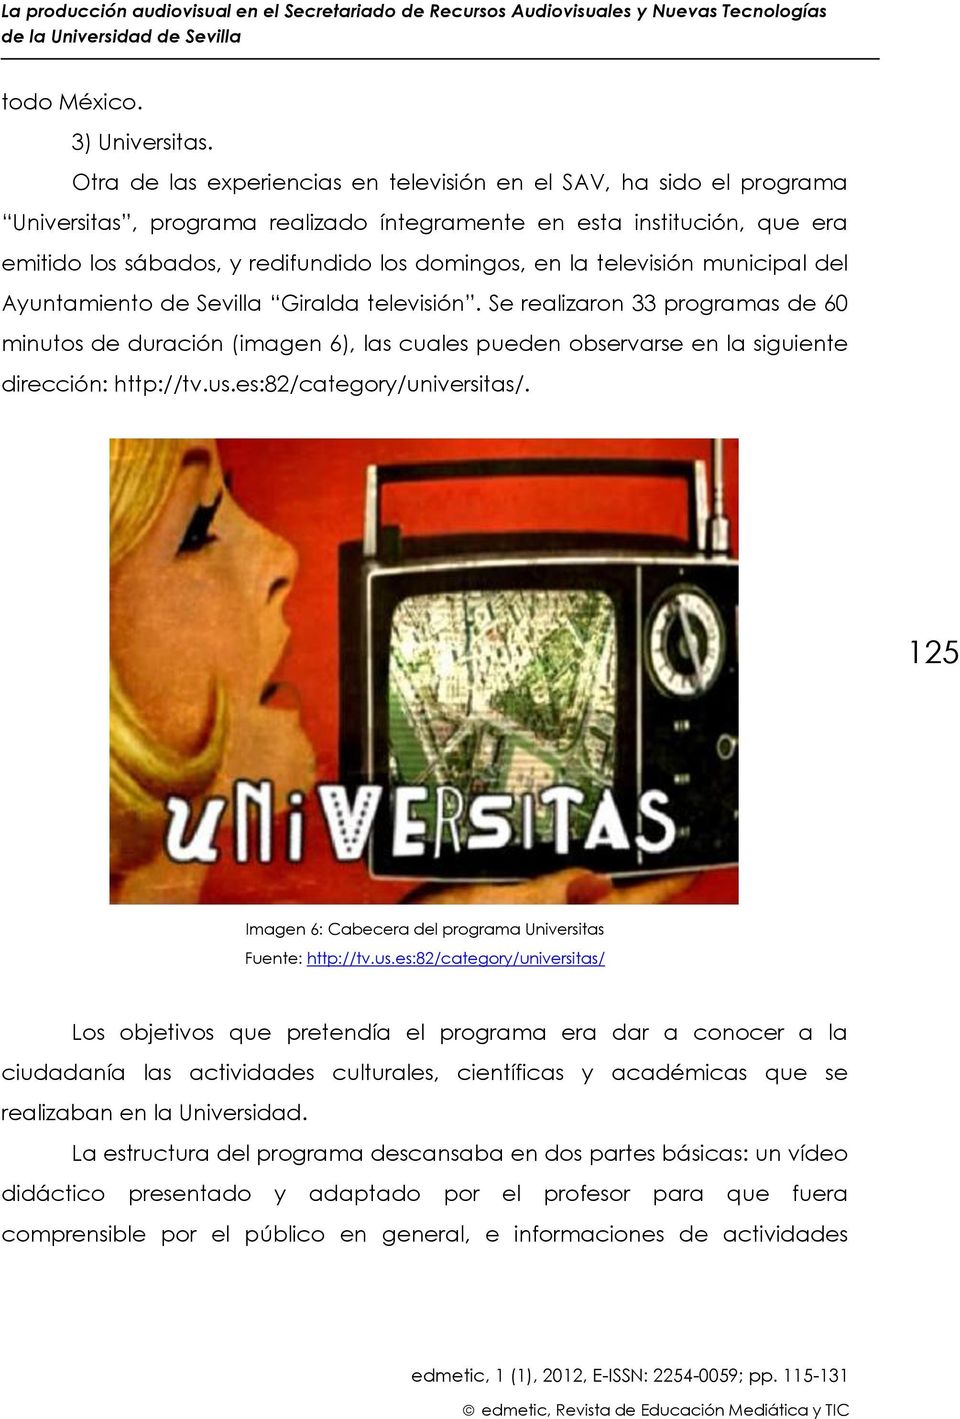 televisión municipal del Ayuntamiento de Sevilla Giralda televisión. Se realizaron 33 programas de 60 minutos de duración (imagen 6), las cuales pueden observarse en la siguiente dirección: http://tv.